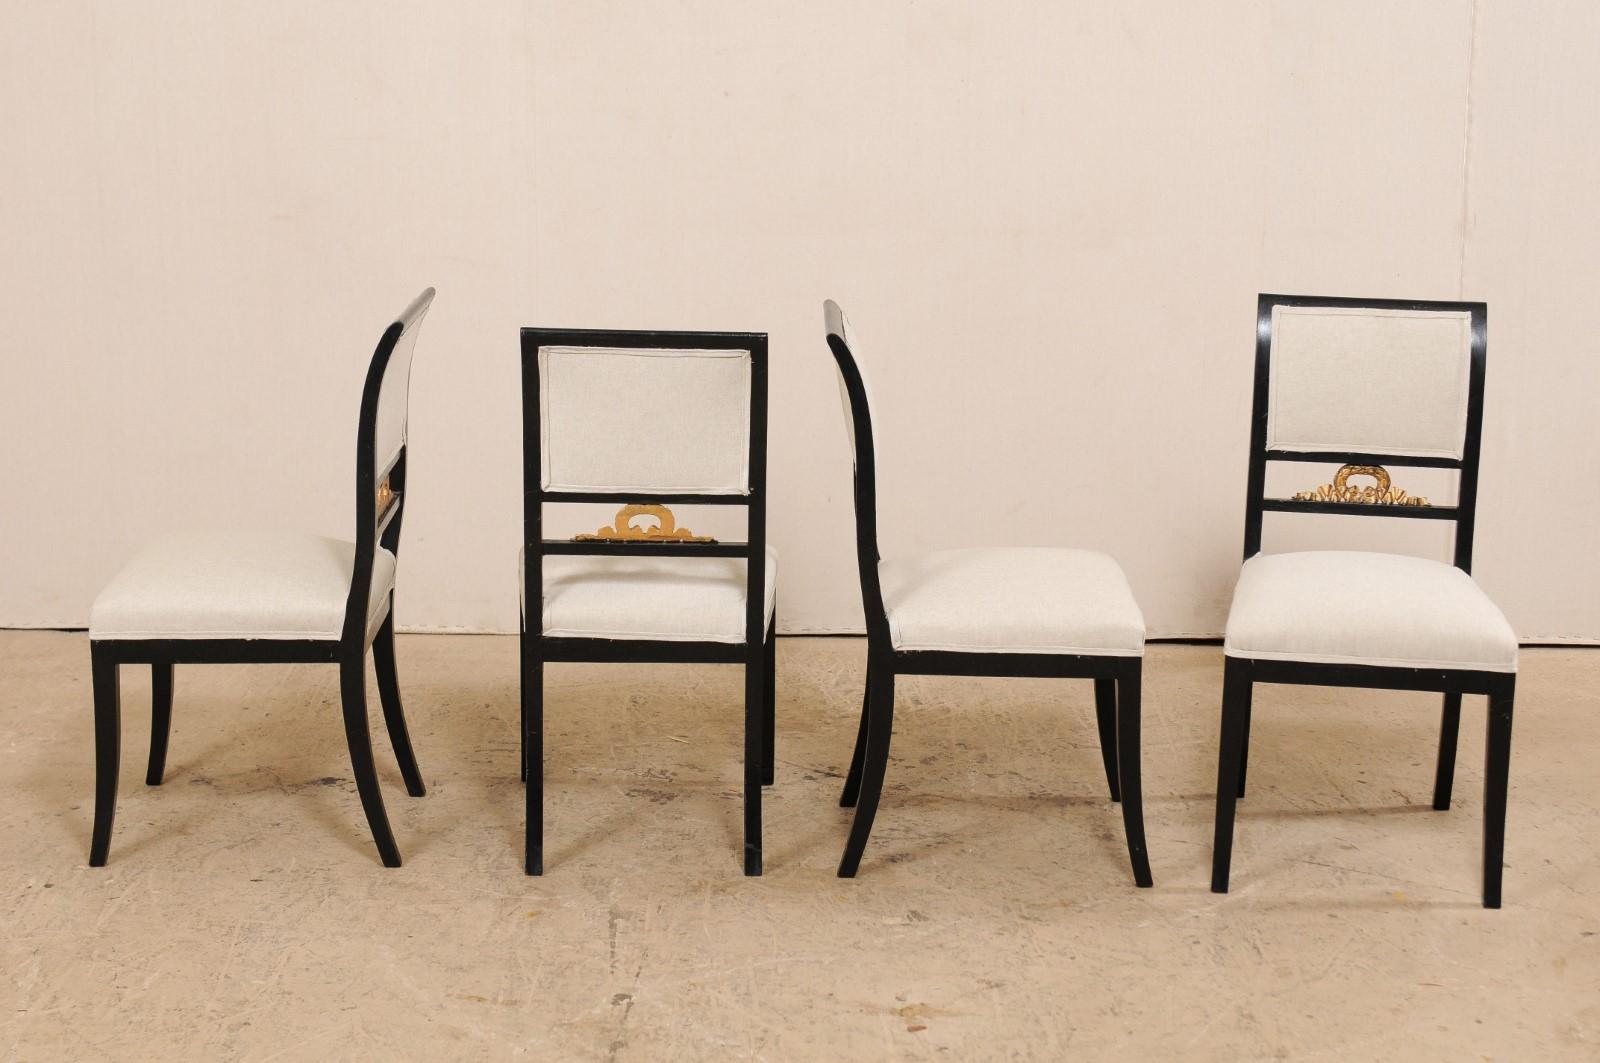 Un ensemble de quatre chaises latérales Empire suédoises du milieu du 19e siècle par le fabricant de meubles F. Pettersson. Ces chaises anciennes de Suède ont un dossier élégamment incurvé, avec des rails supérieurs droits en bois encadrant leurs